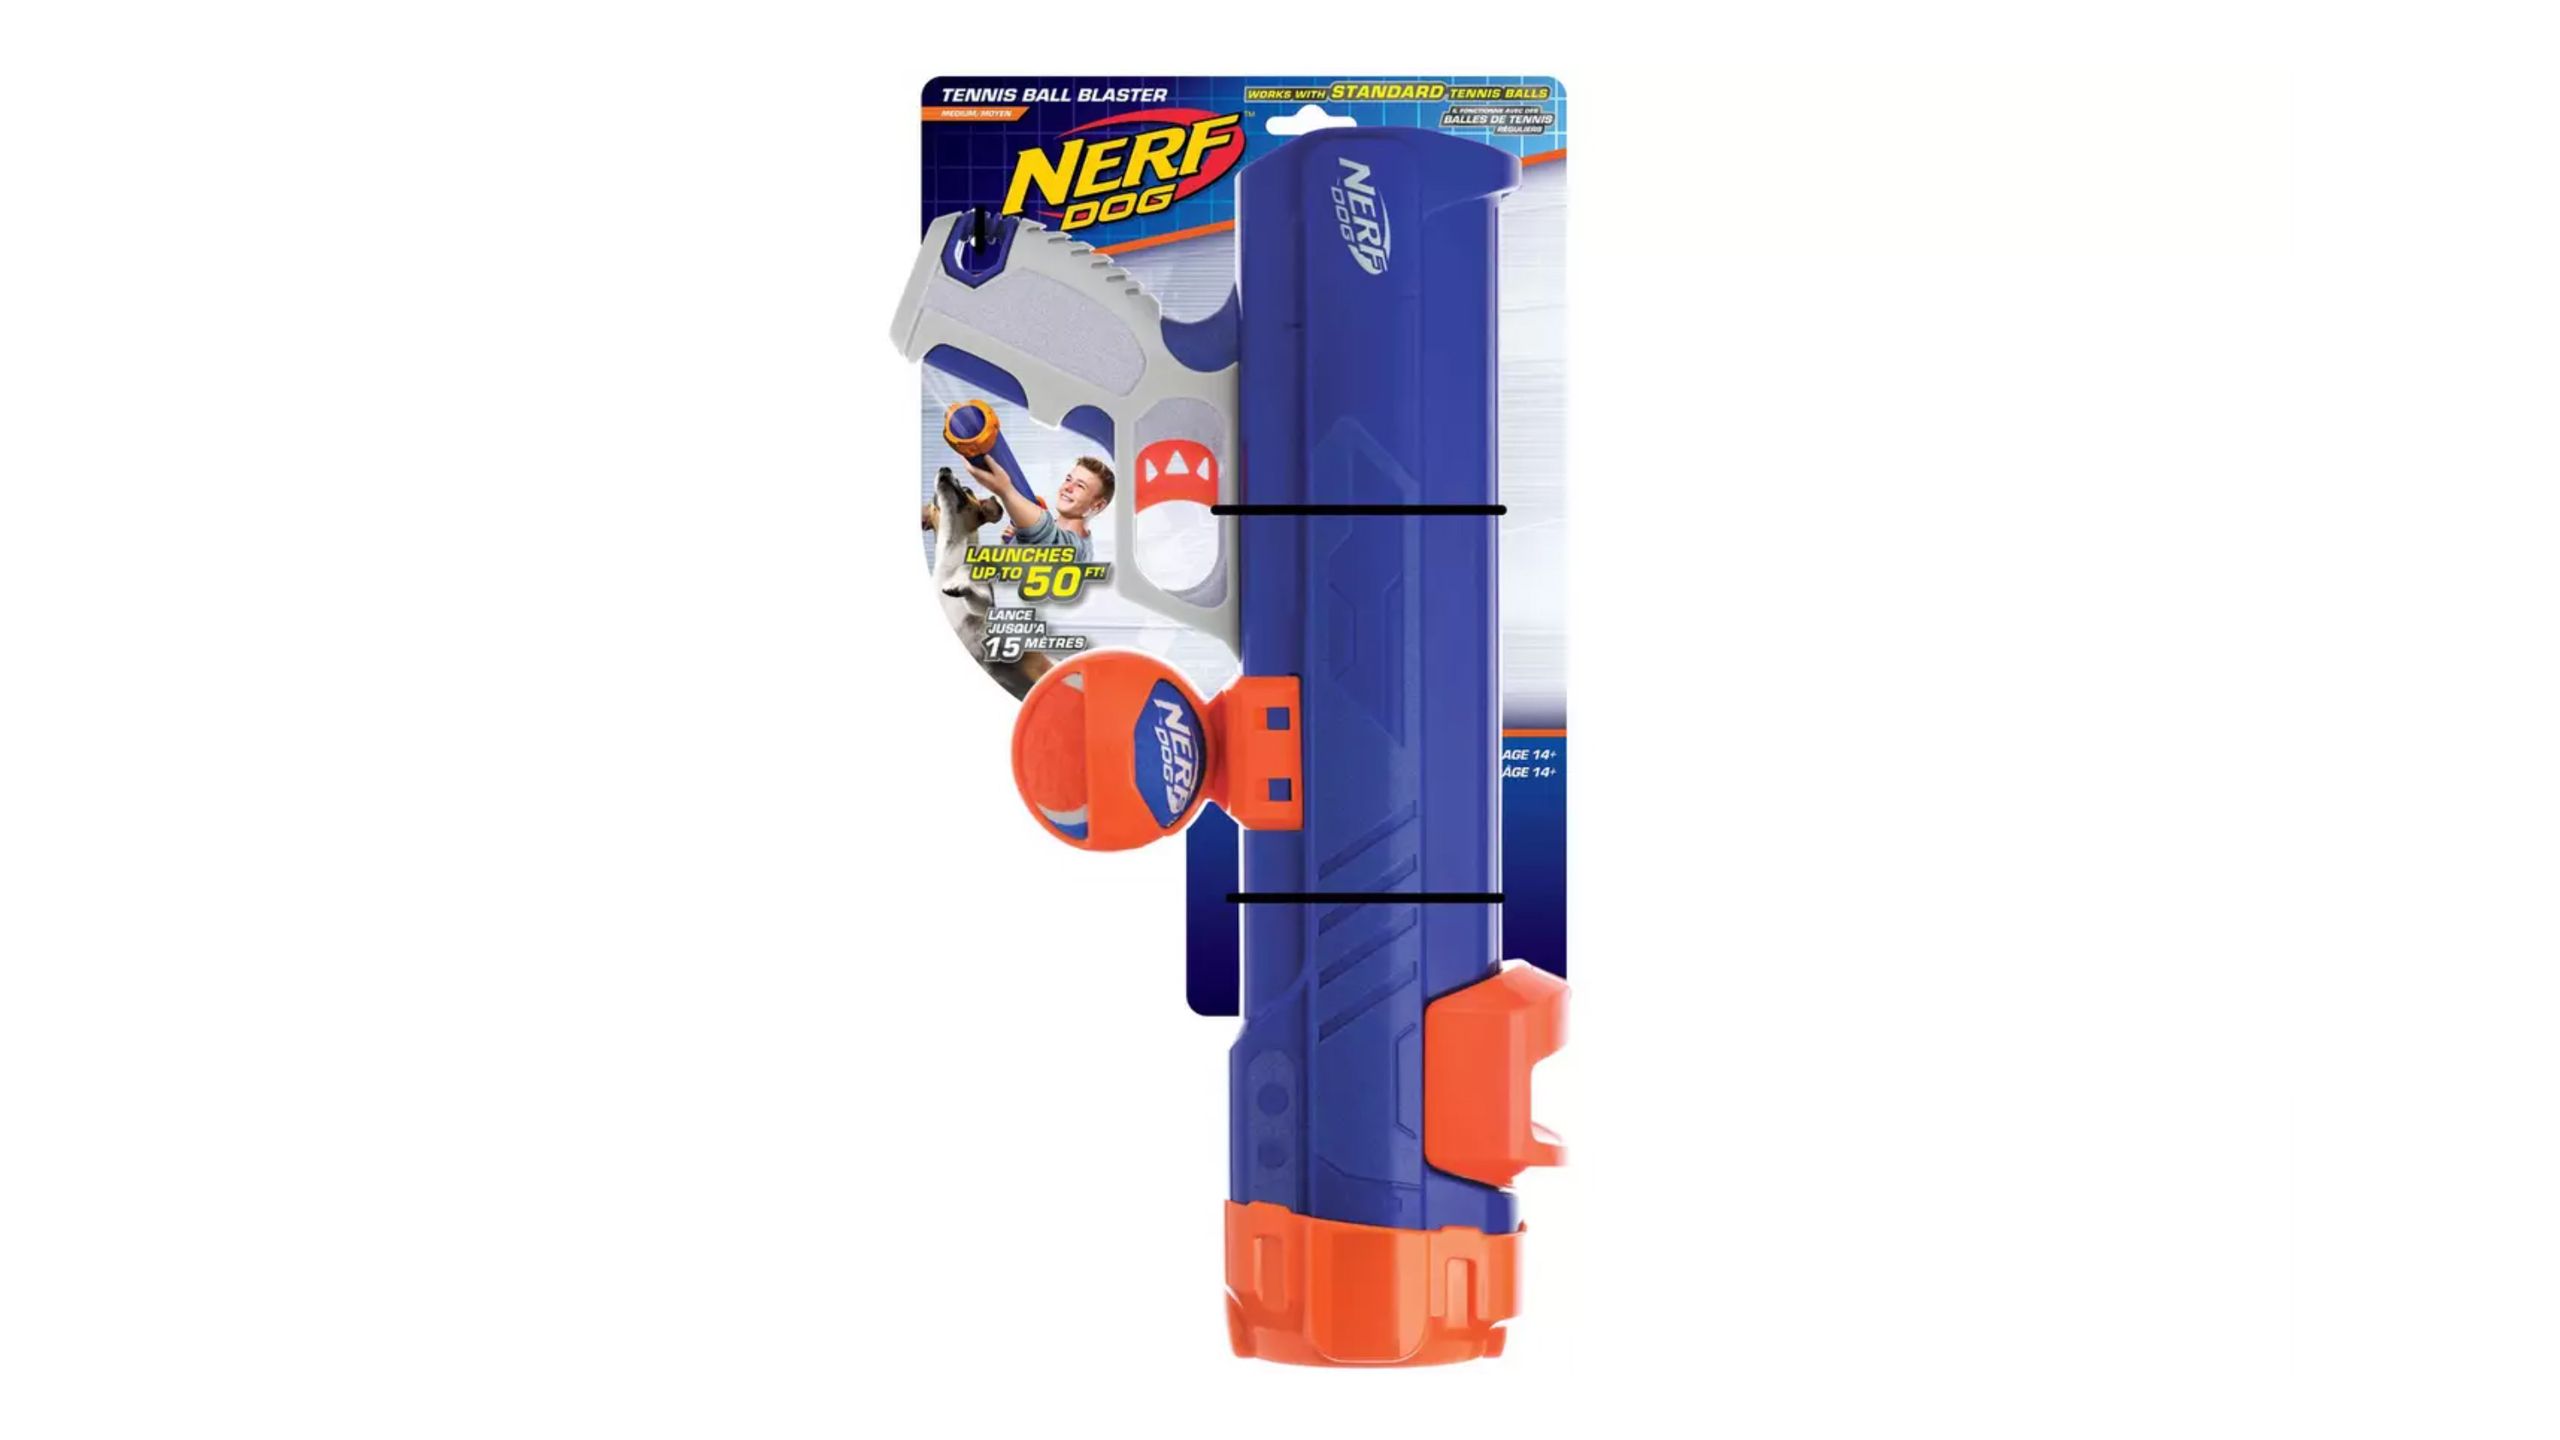 cel mai bun pistol Nerf pentru proprietarii de animale de companie: Nerf Dog Tenis Ball Blaster Dog Toy